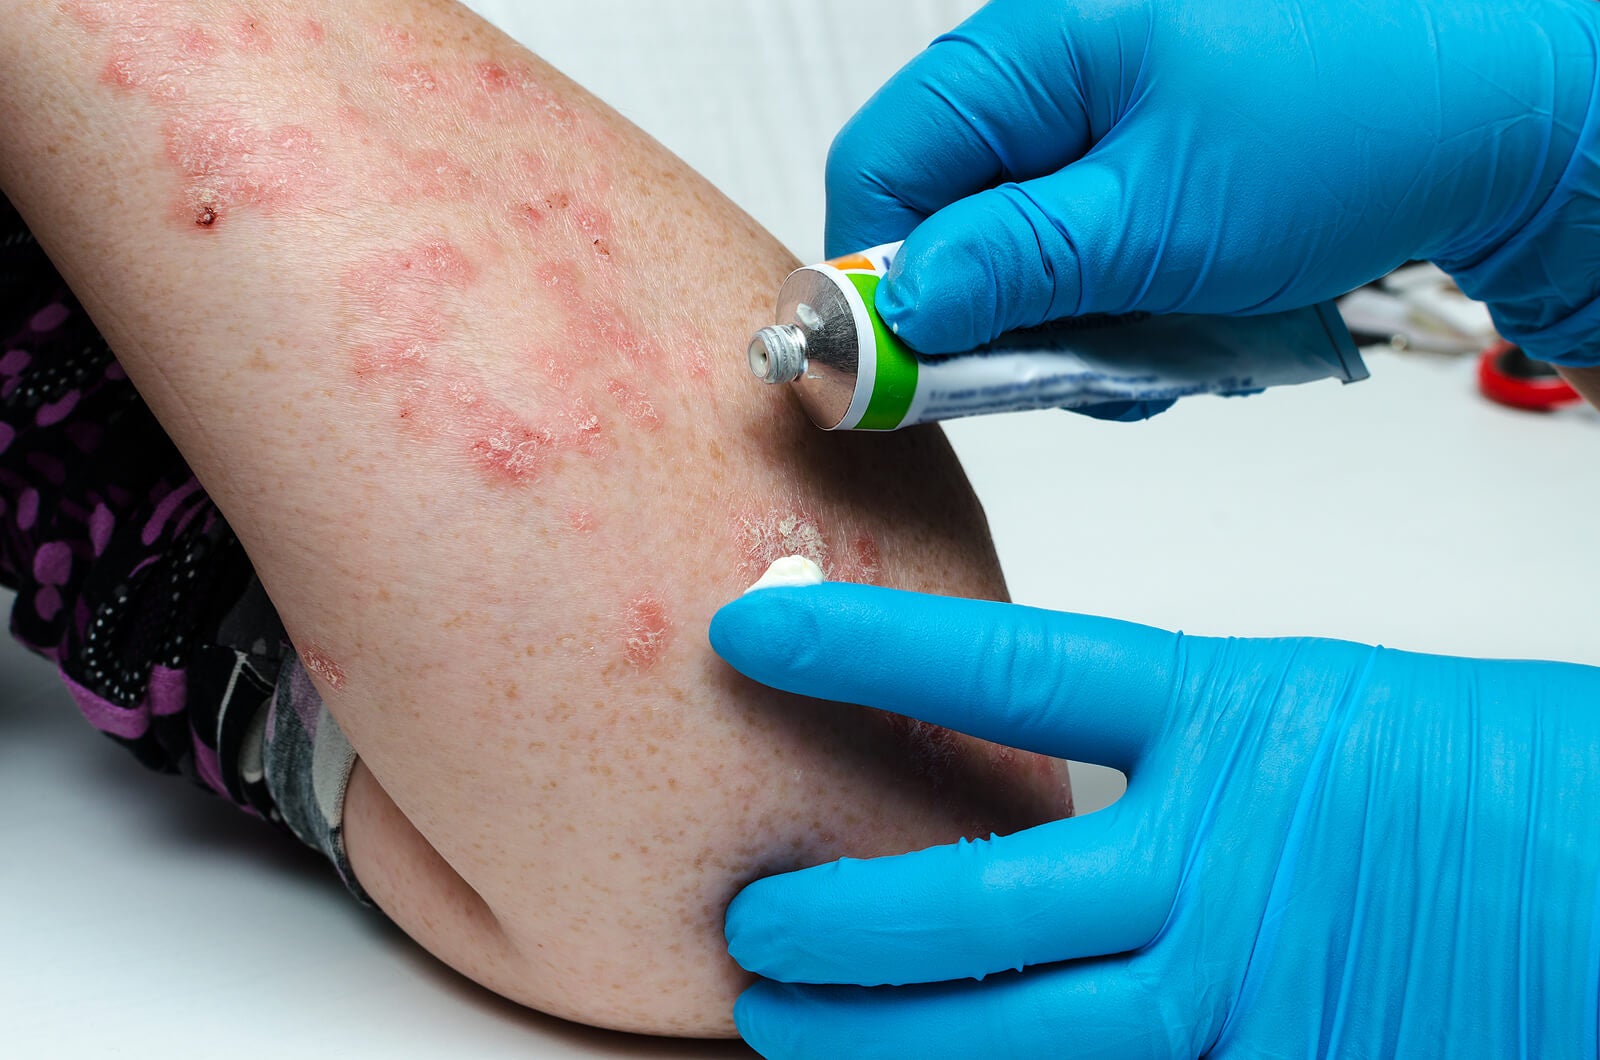 Productos de uso tópico con propiedades antiinflamatorias y antifúngicas pueden ayudar en el tratamiento de la dermatitis seborreica.